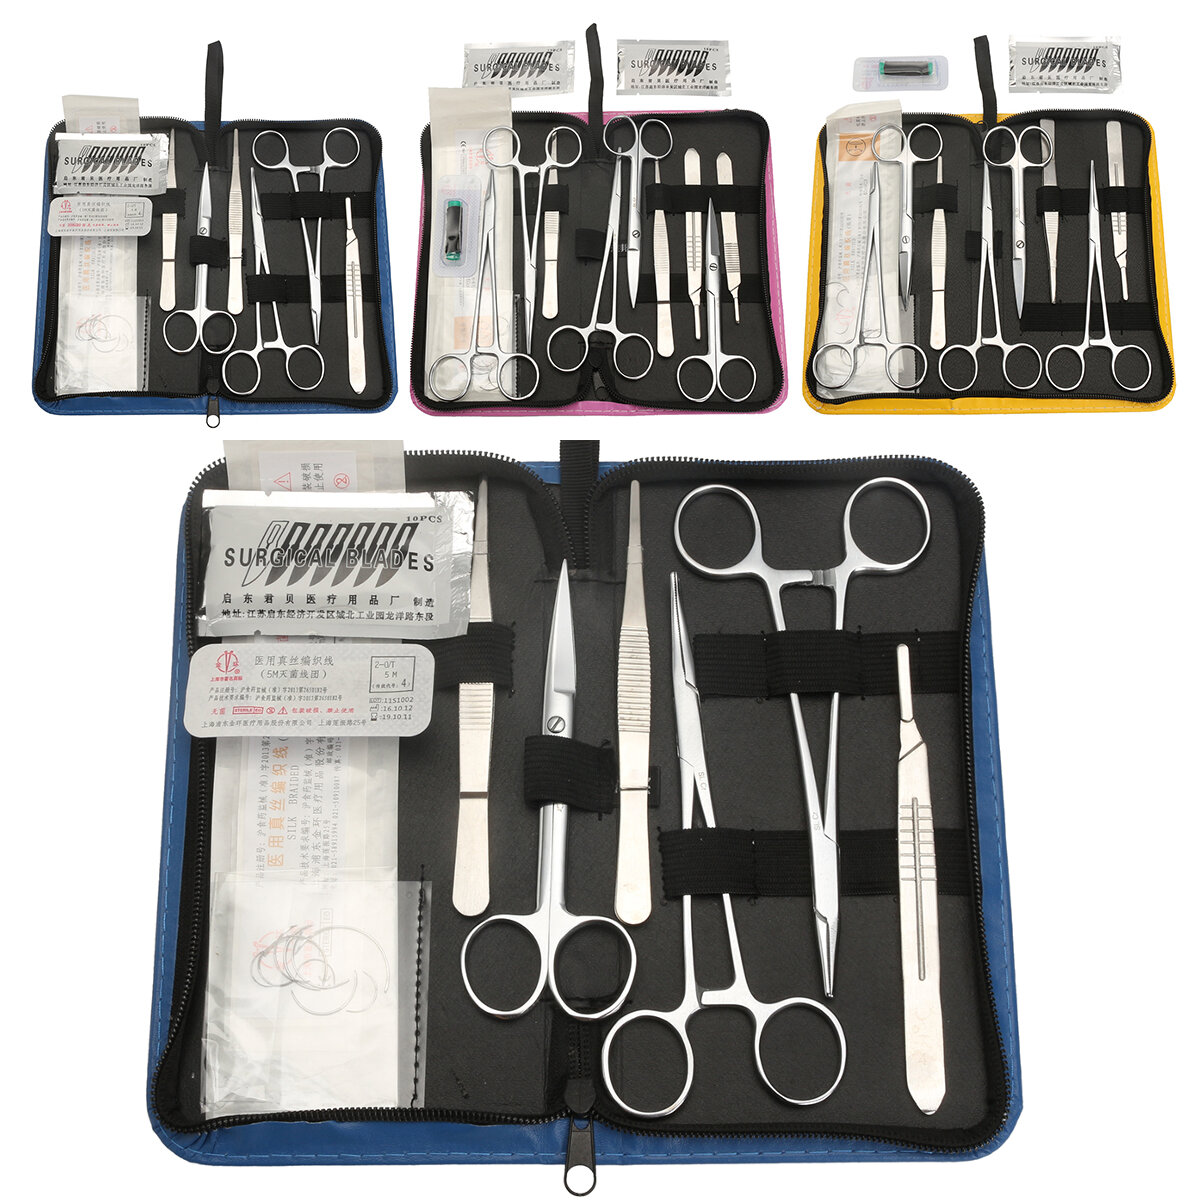 Kit di pratica di sutura che include un pacchetto di corso di sutura sviluppato professionalmente e una borsa degli attrezzi.